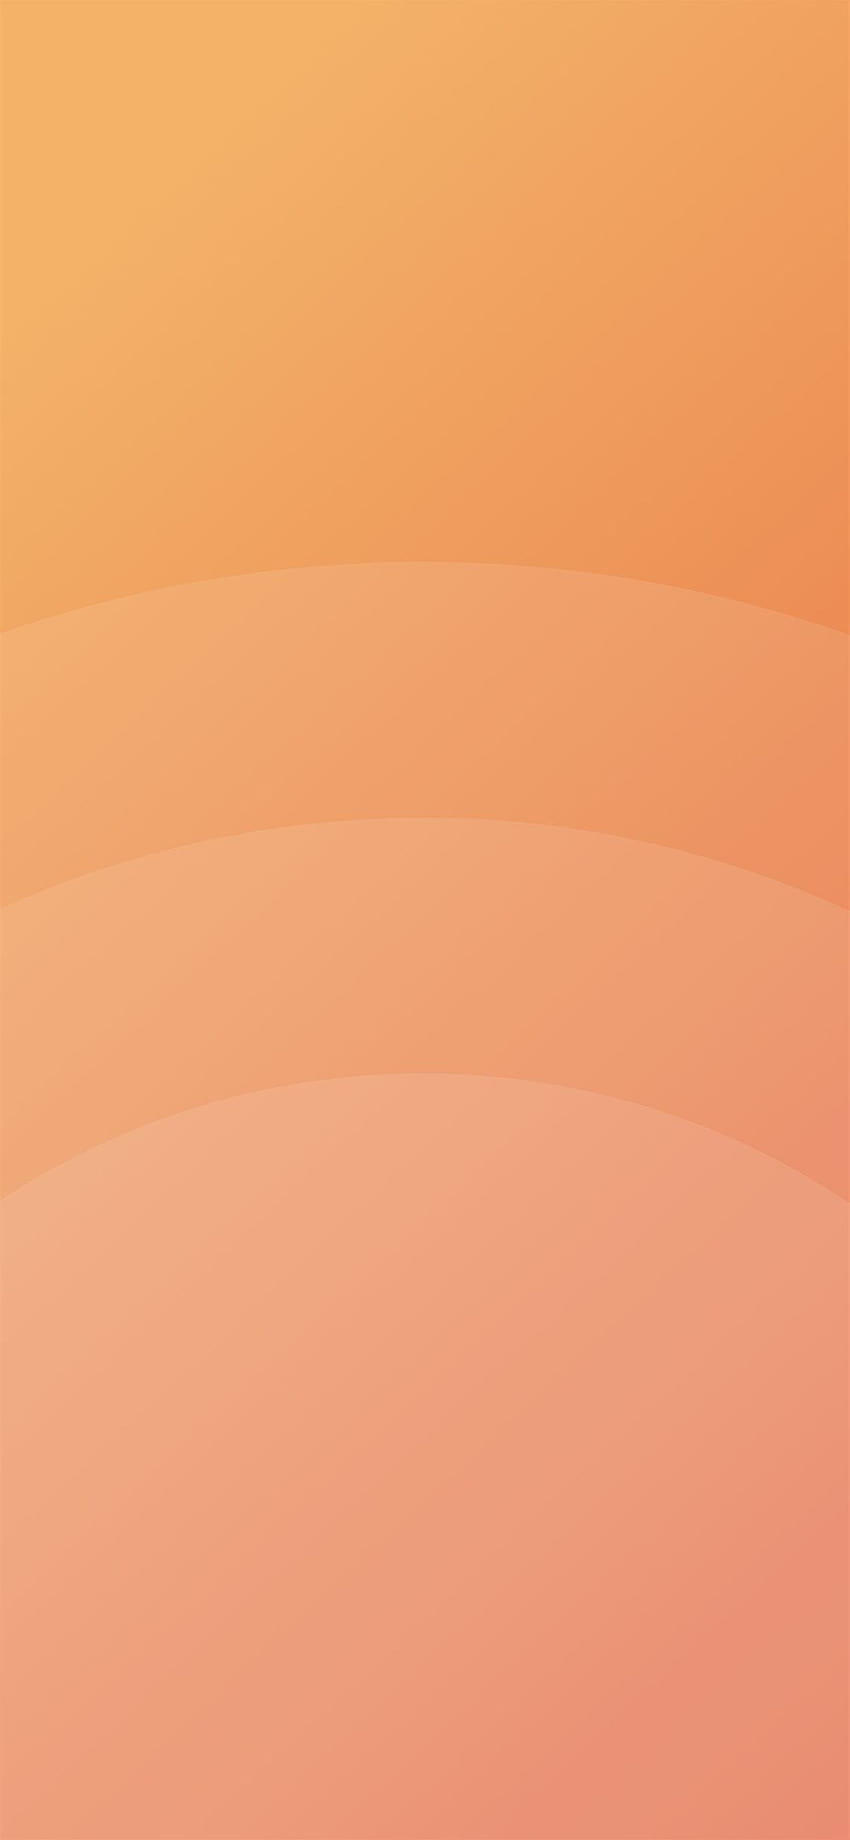 Daire turuncu basit minimal desenli arka planlar iPhone X, turuncu minimalist HD telefon duvar kağıdı